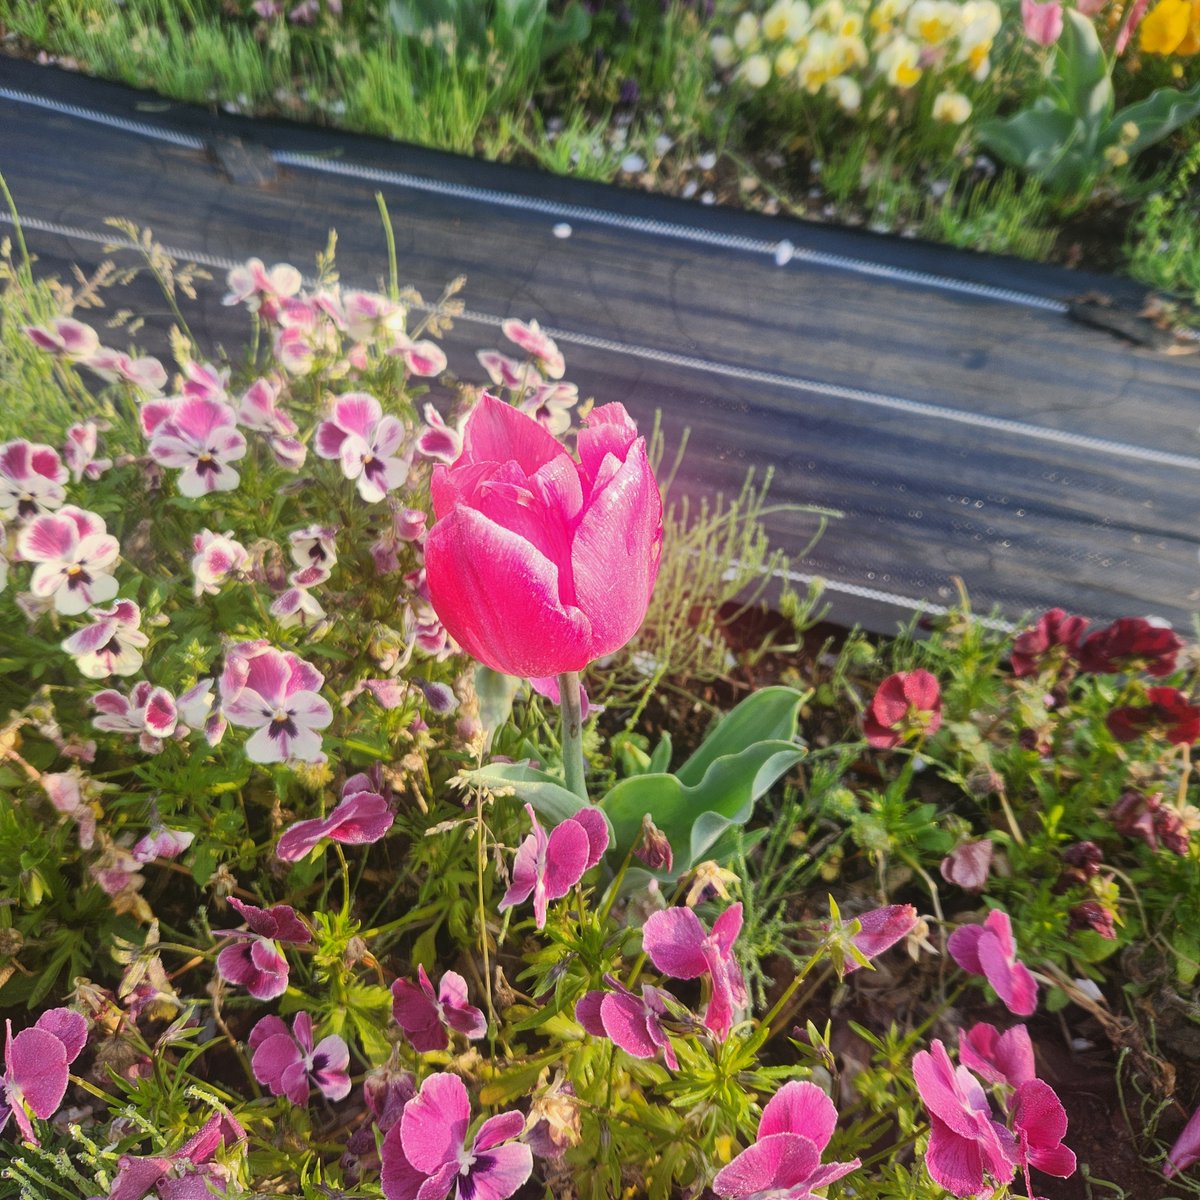 久しぶりの早朝ジョグ&ウォーク
公園の花壇がきれい❗
八重桜も満開❗
#三ツ池公園